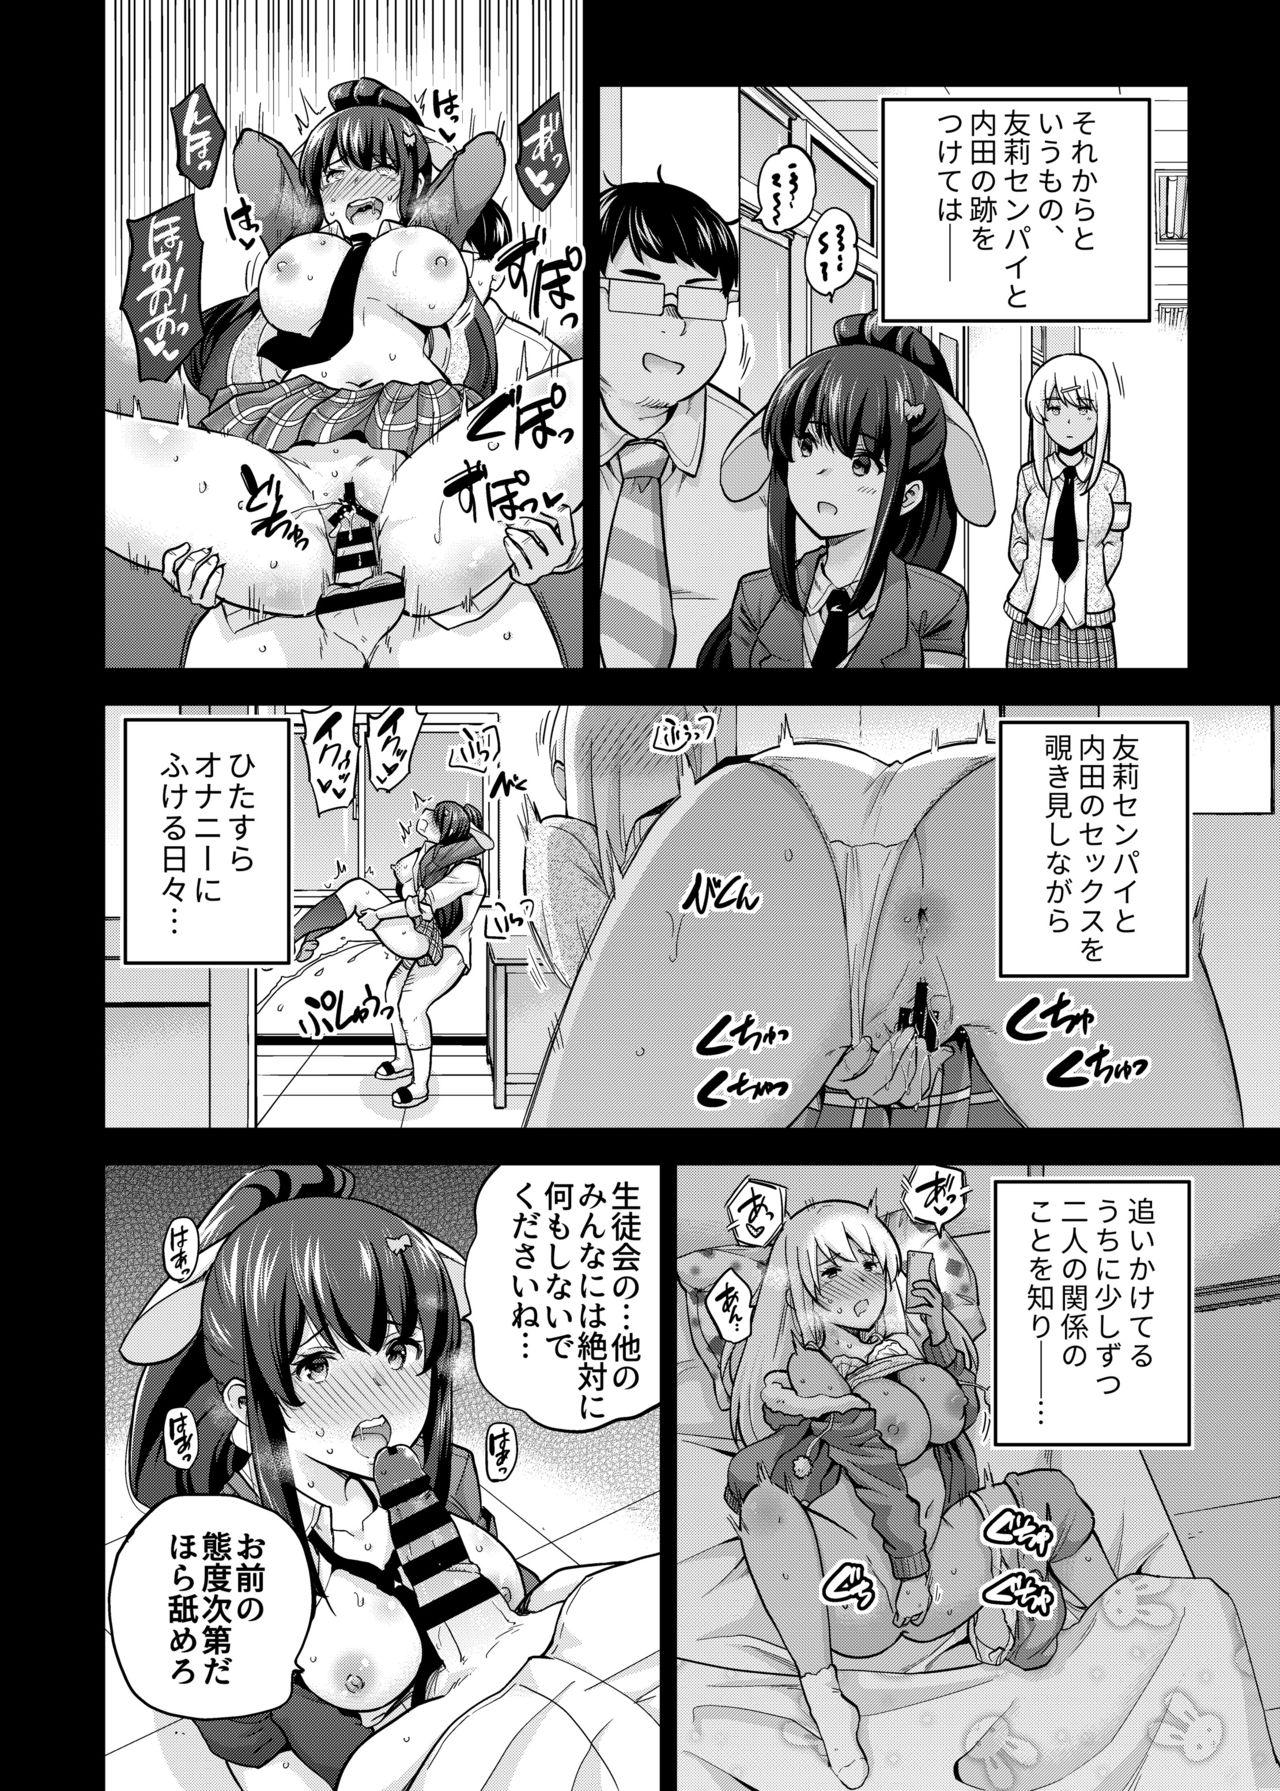 Twistys SNS Seitokai Yakuin wo Netotte Share suru Hanashi. 3 - Original Gays - Page 8